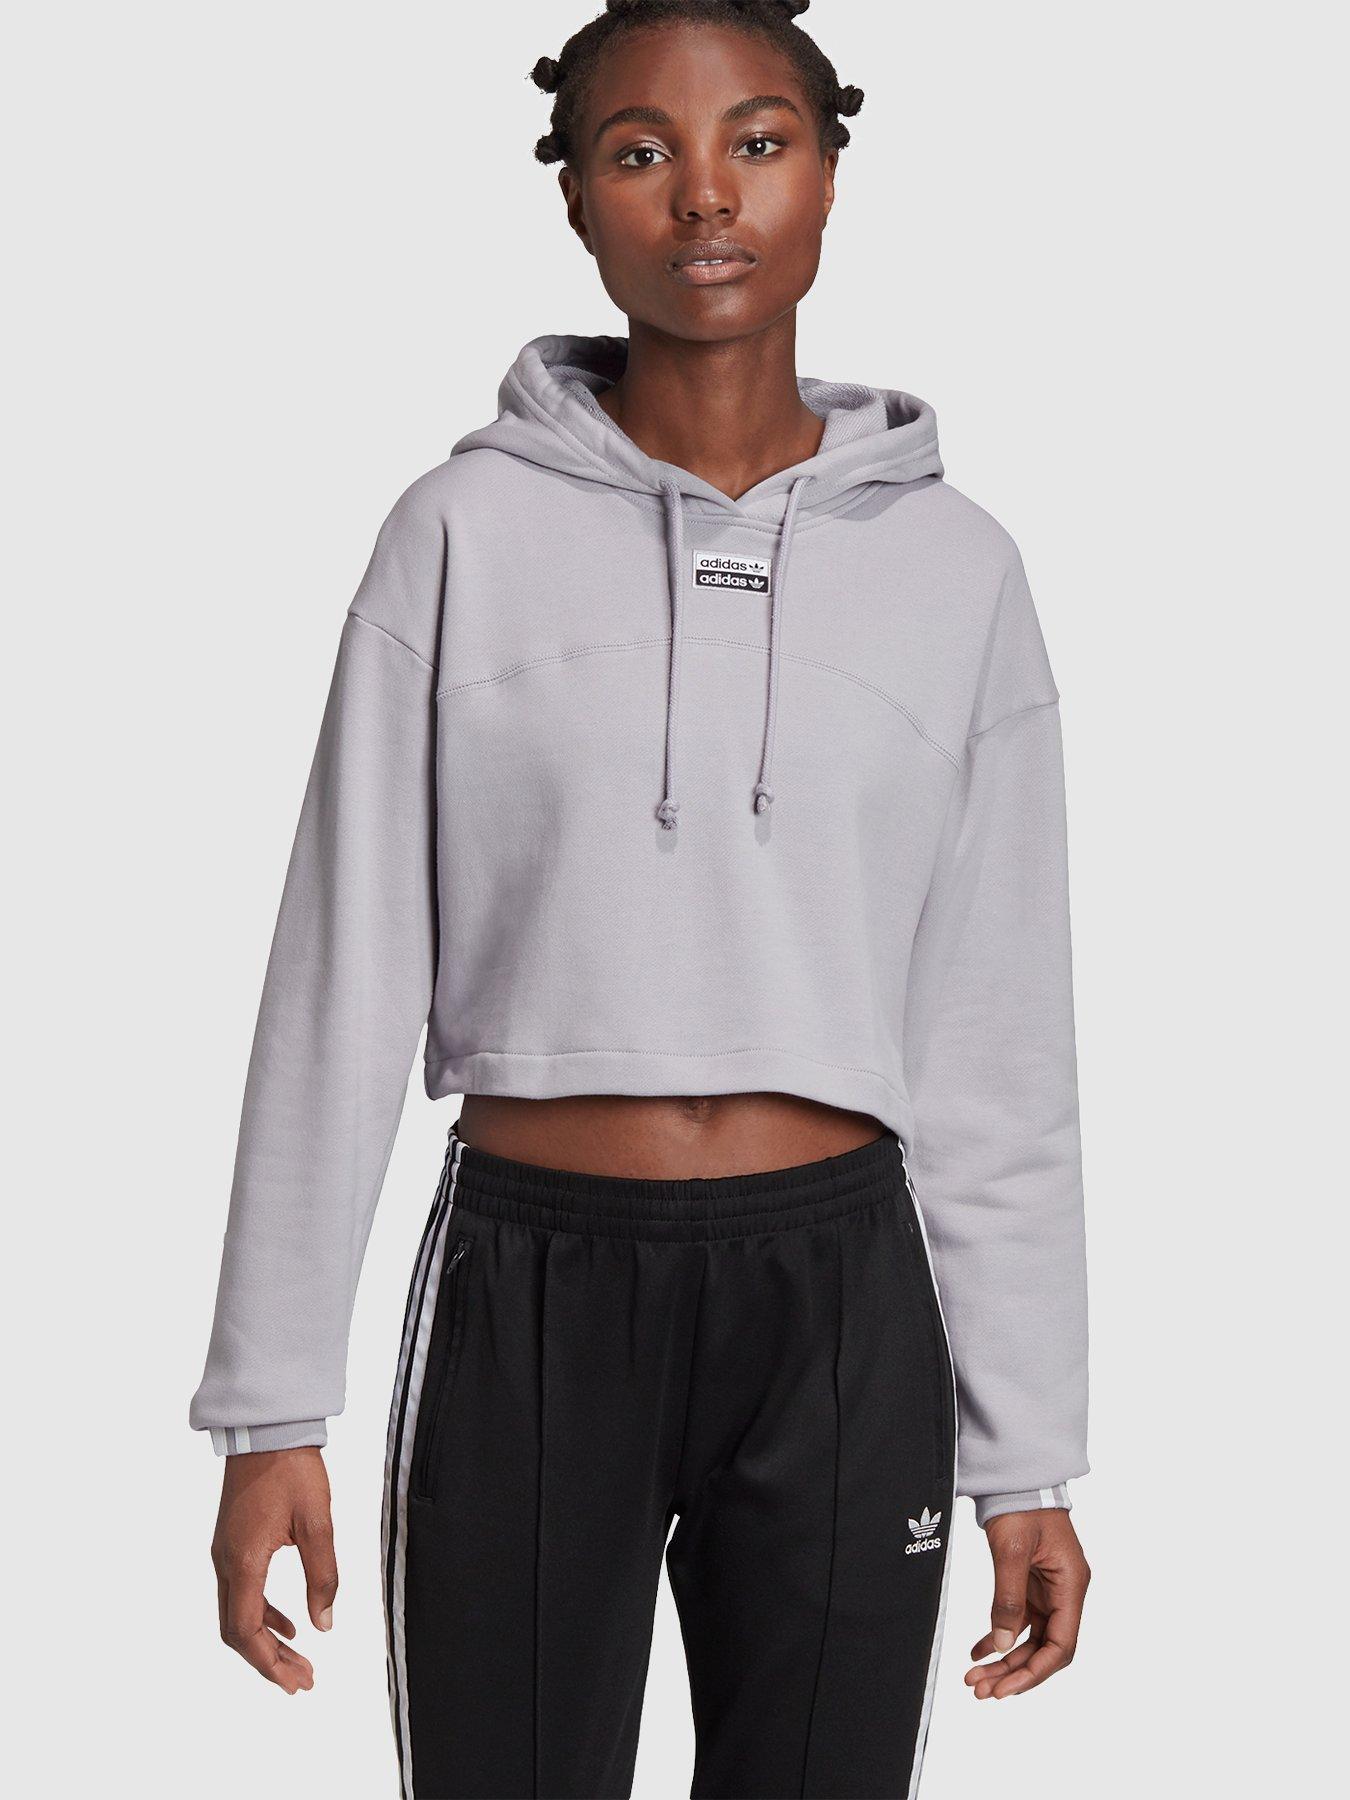 adidas cropped hoodie grey